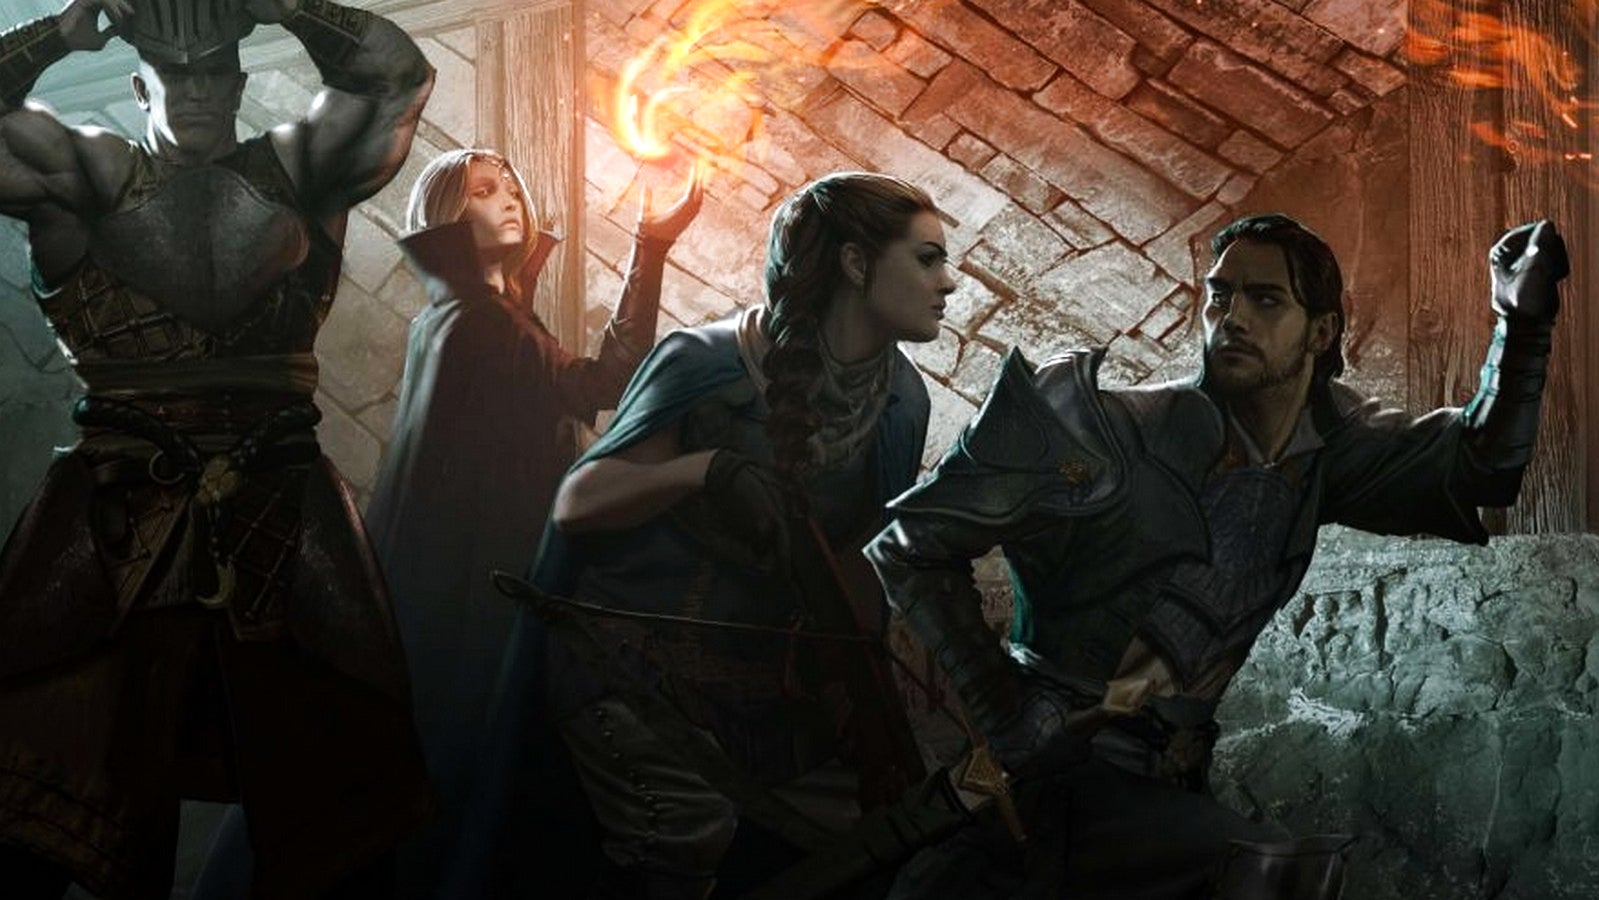 Bilder zu Erscheint Dragon Age 4 dieses Jahr? "Keine Chance", sagen Insider